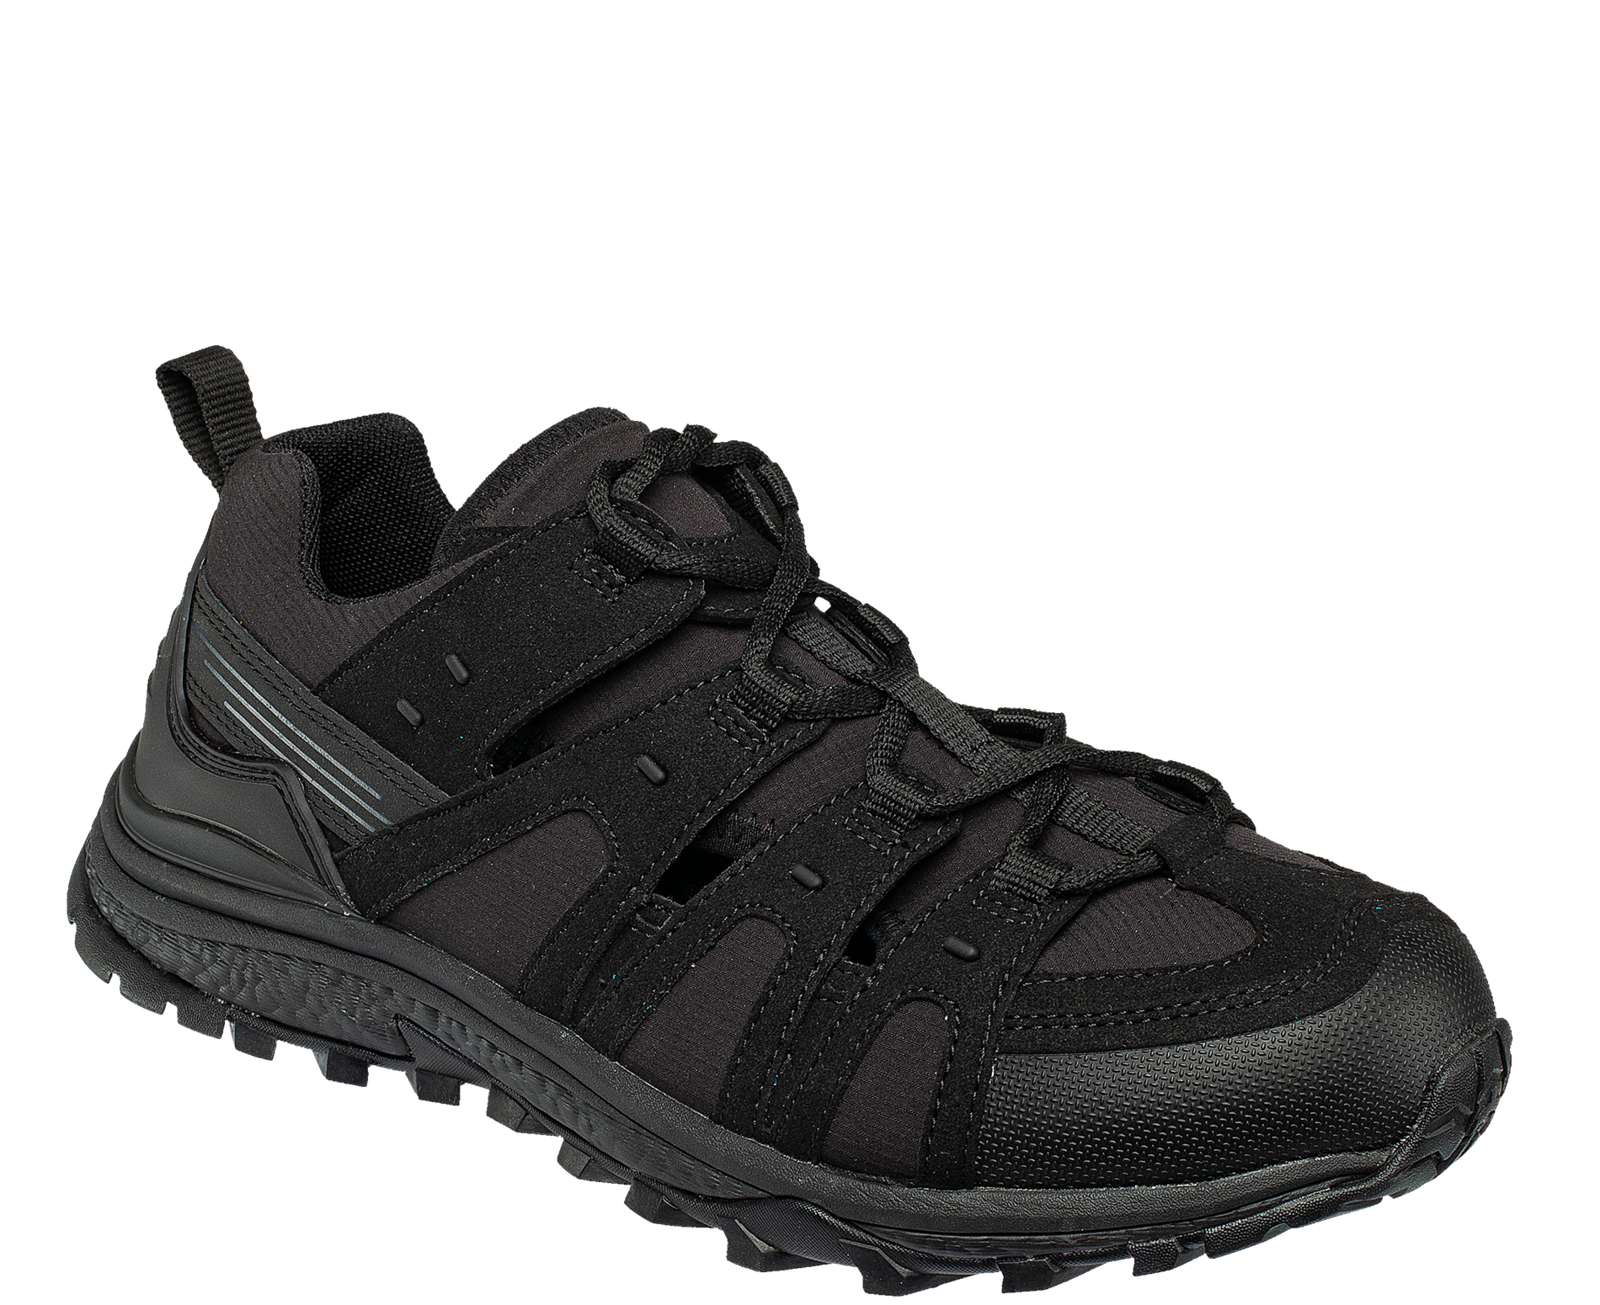 Pracovné sandále Bennon Amigo O1 čierne - veľkosť: 40, farba: čierna